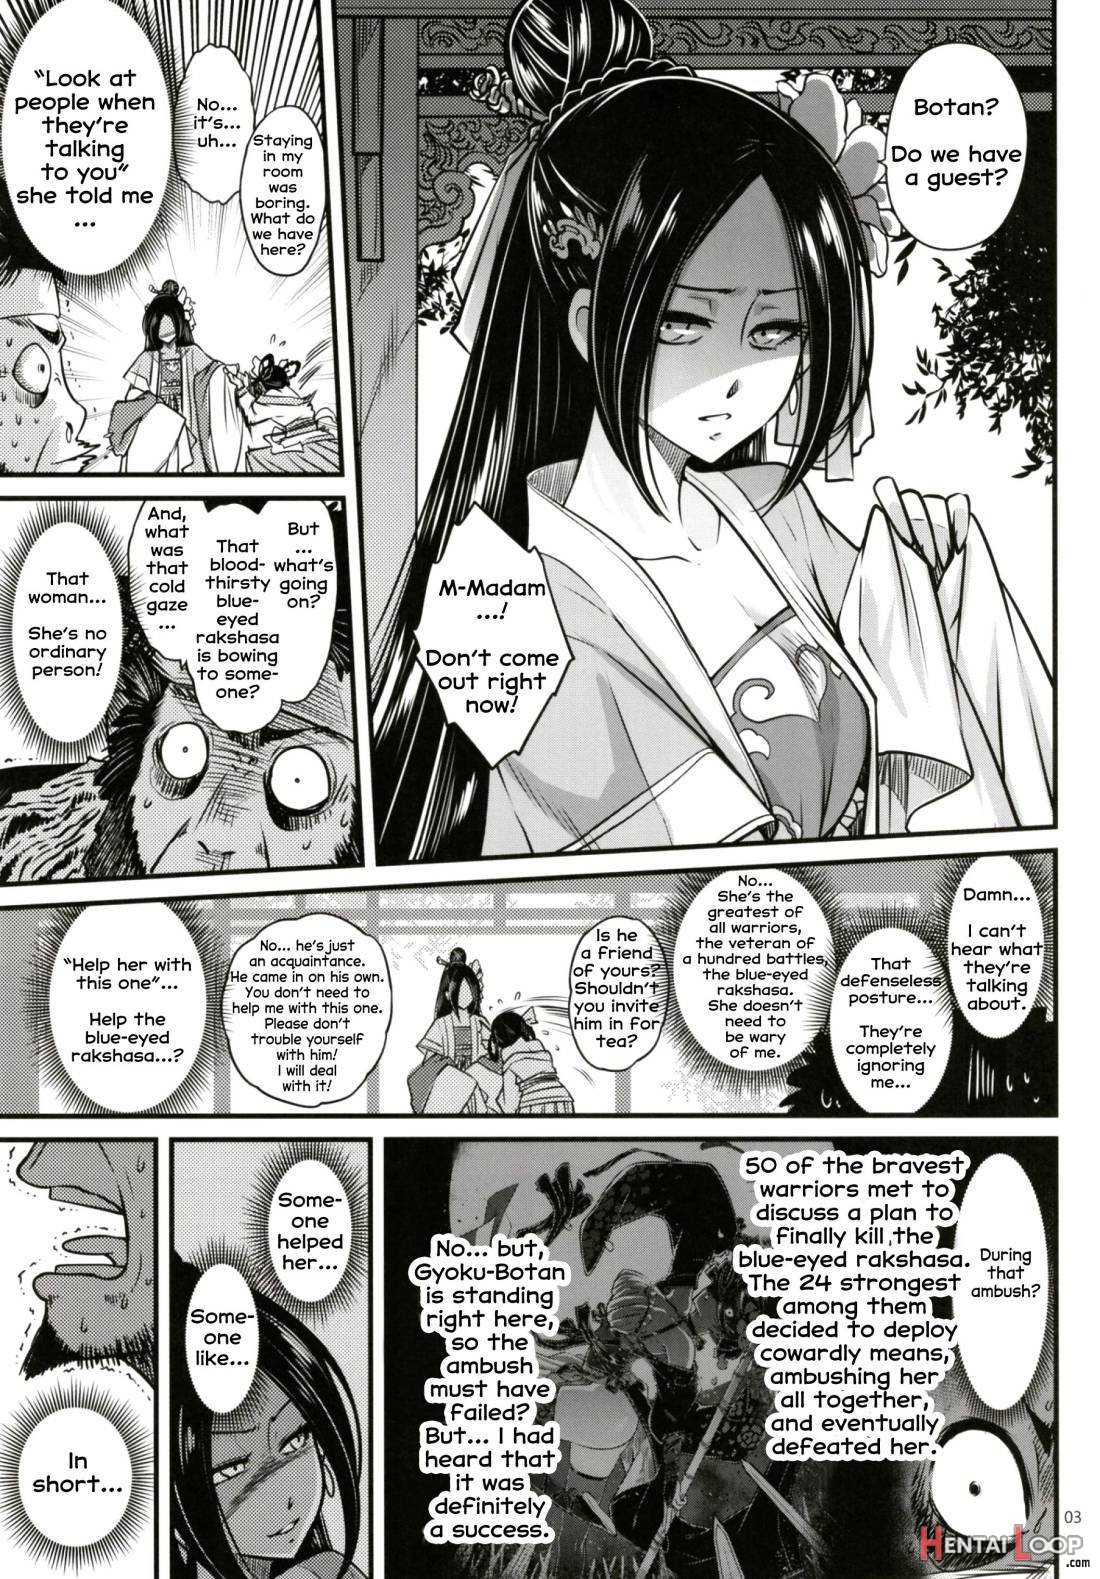 Hyakkasou2 《souzetsu! Kaidou Fujin No Densetsu》 page 4